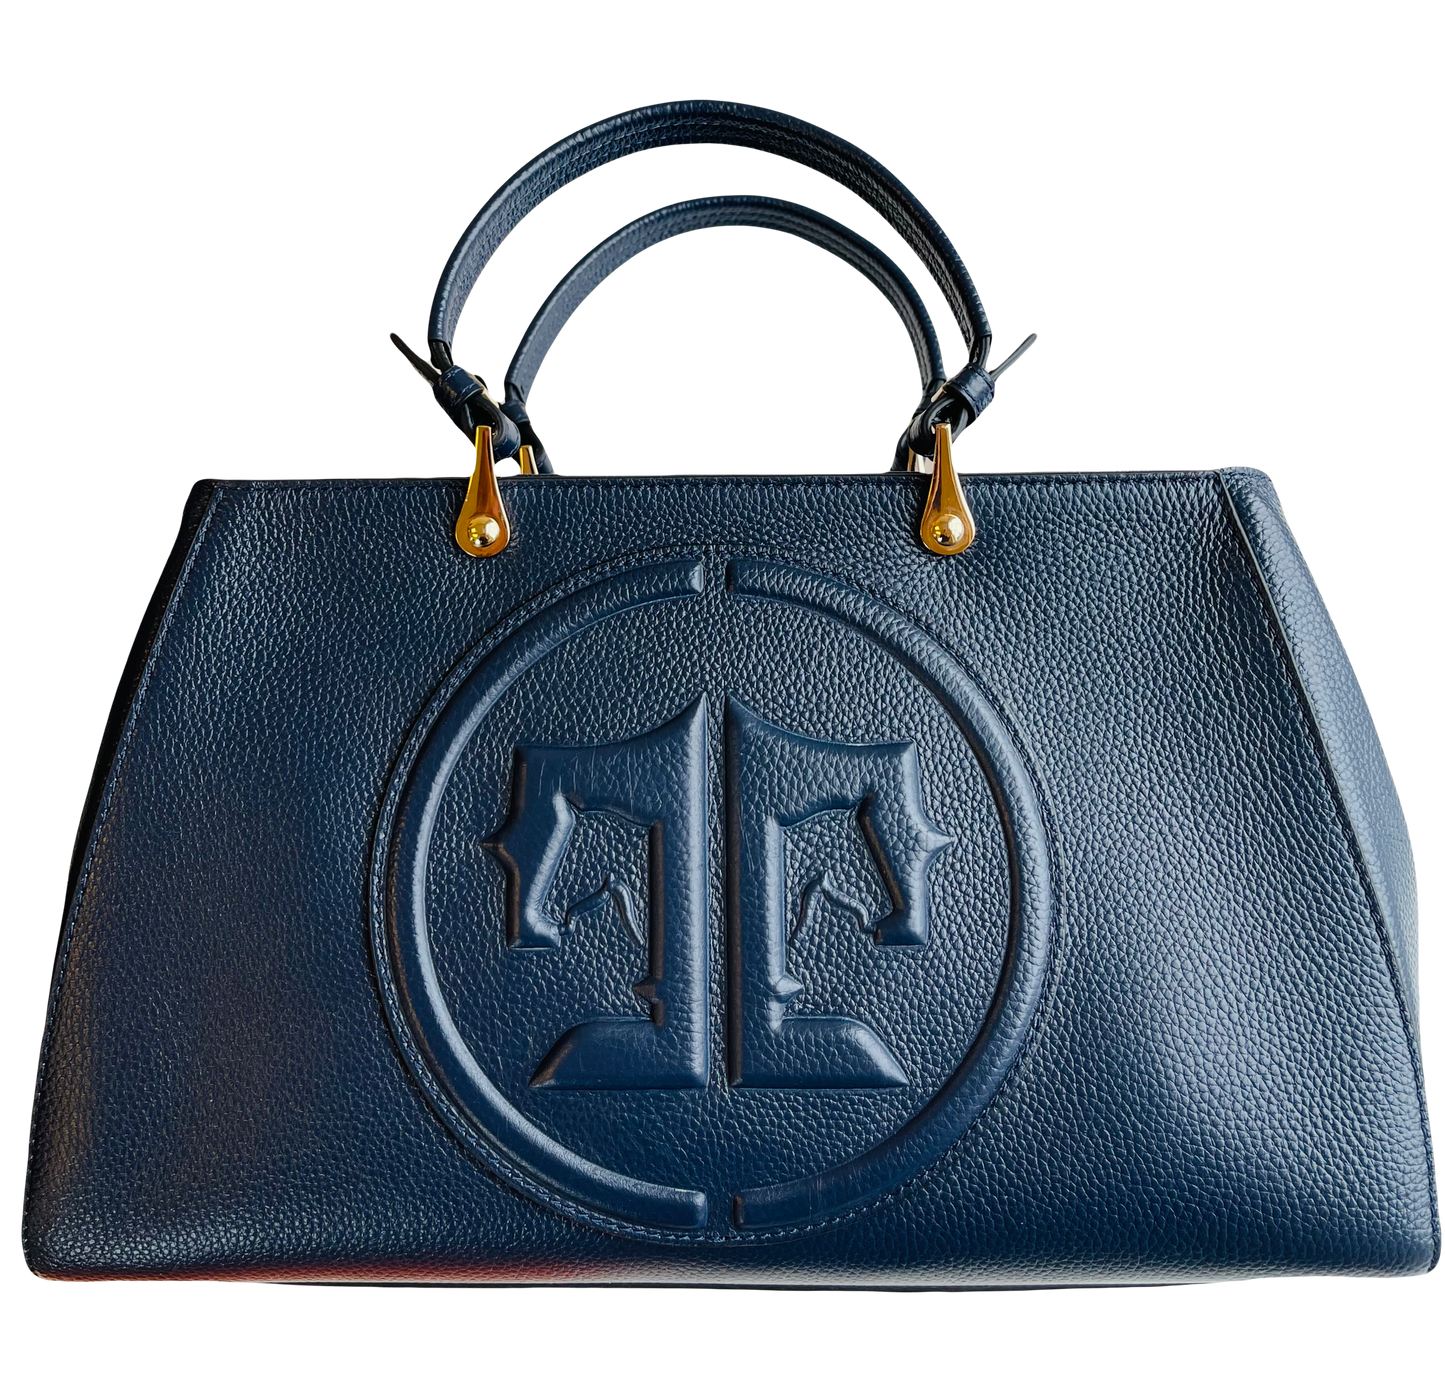 Tucker Tweed Leather Handbags Sedgefield Legacy: Signature